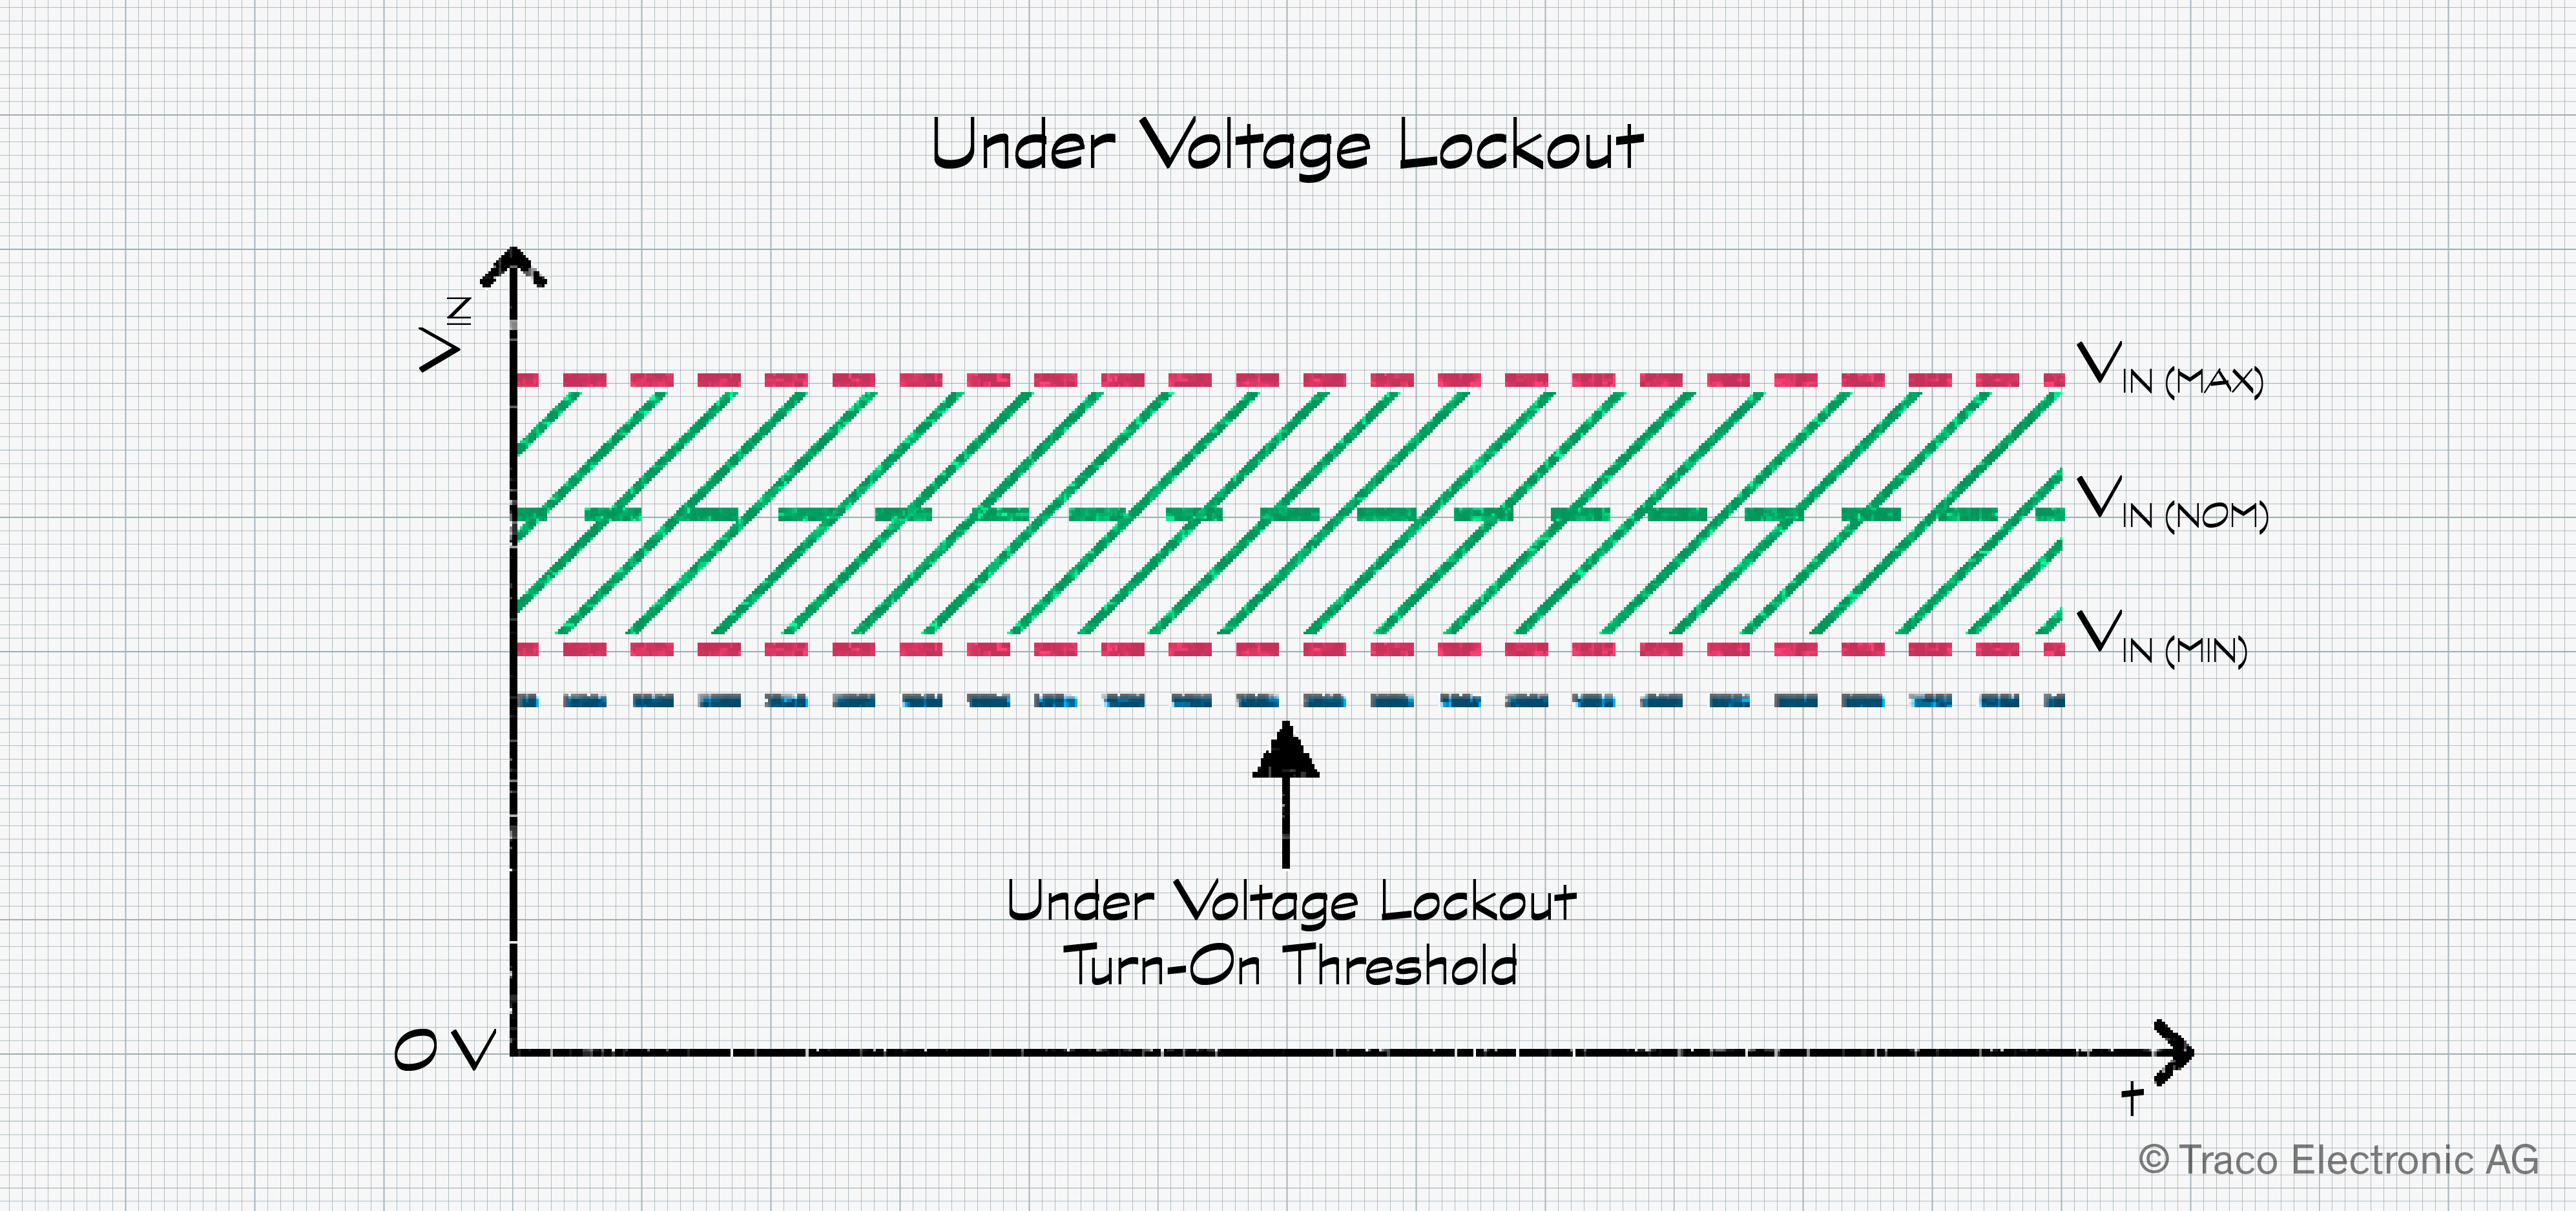 Under Voltage Lockout